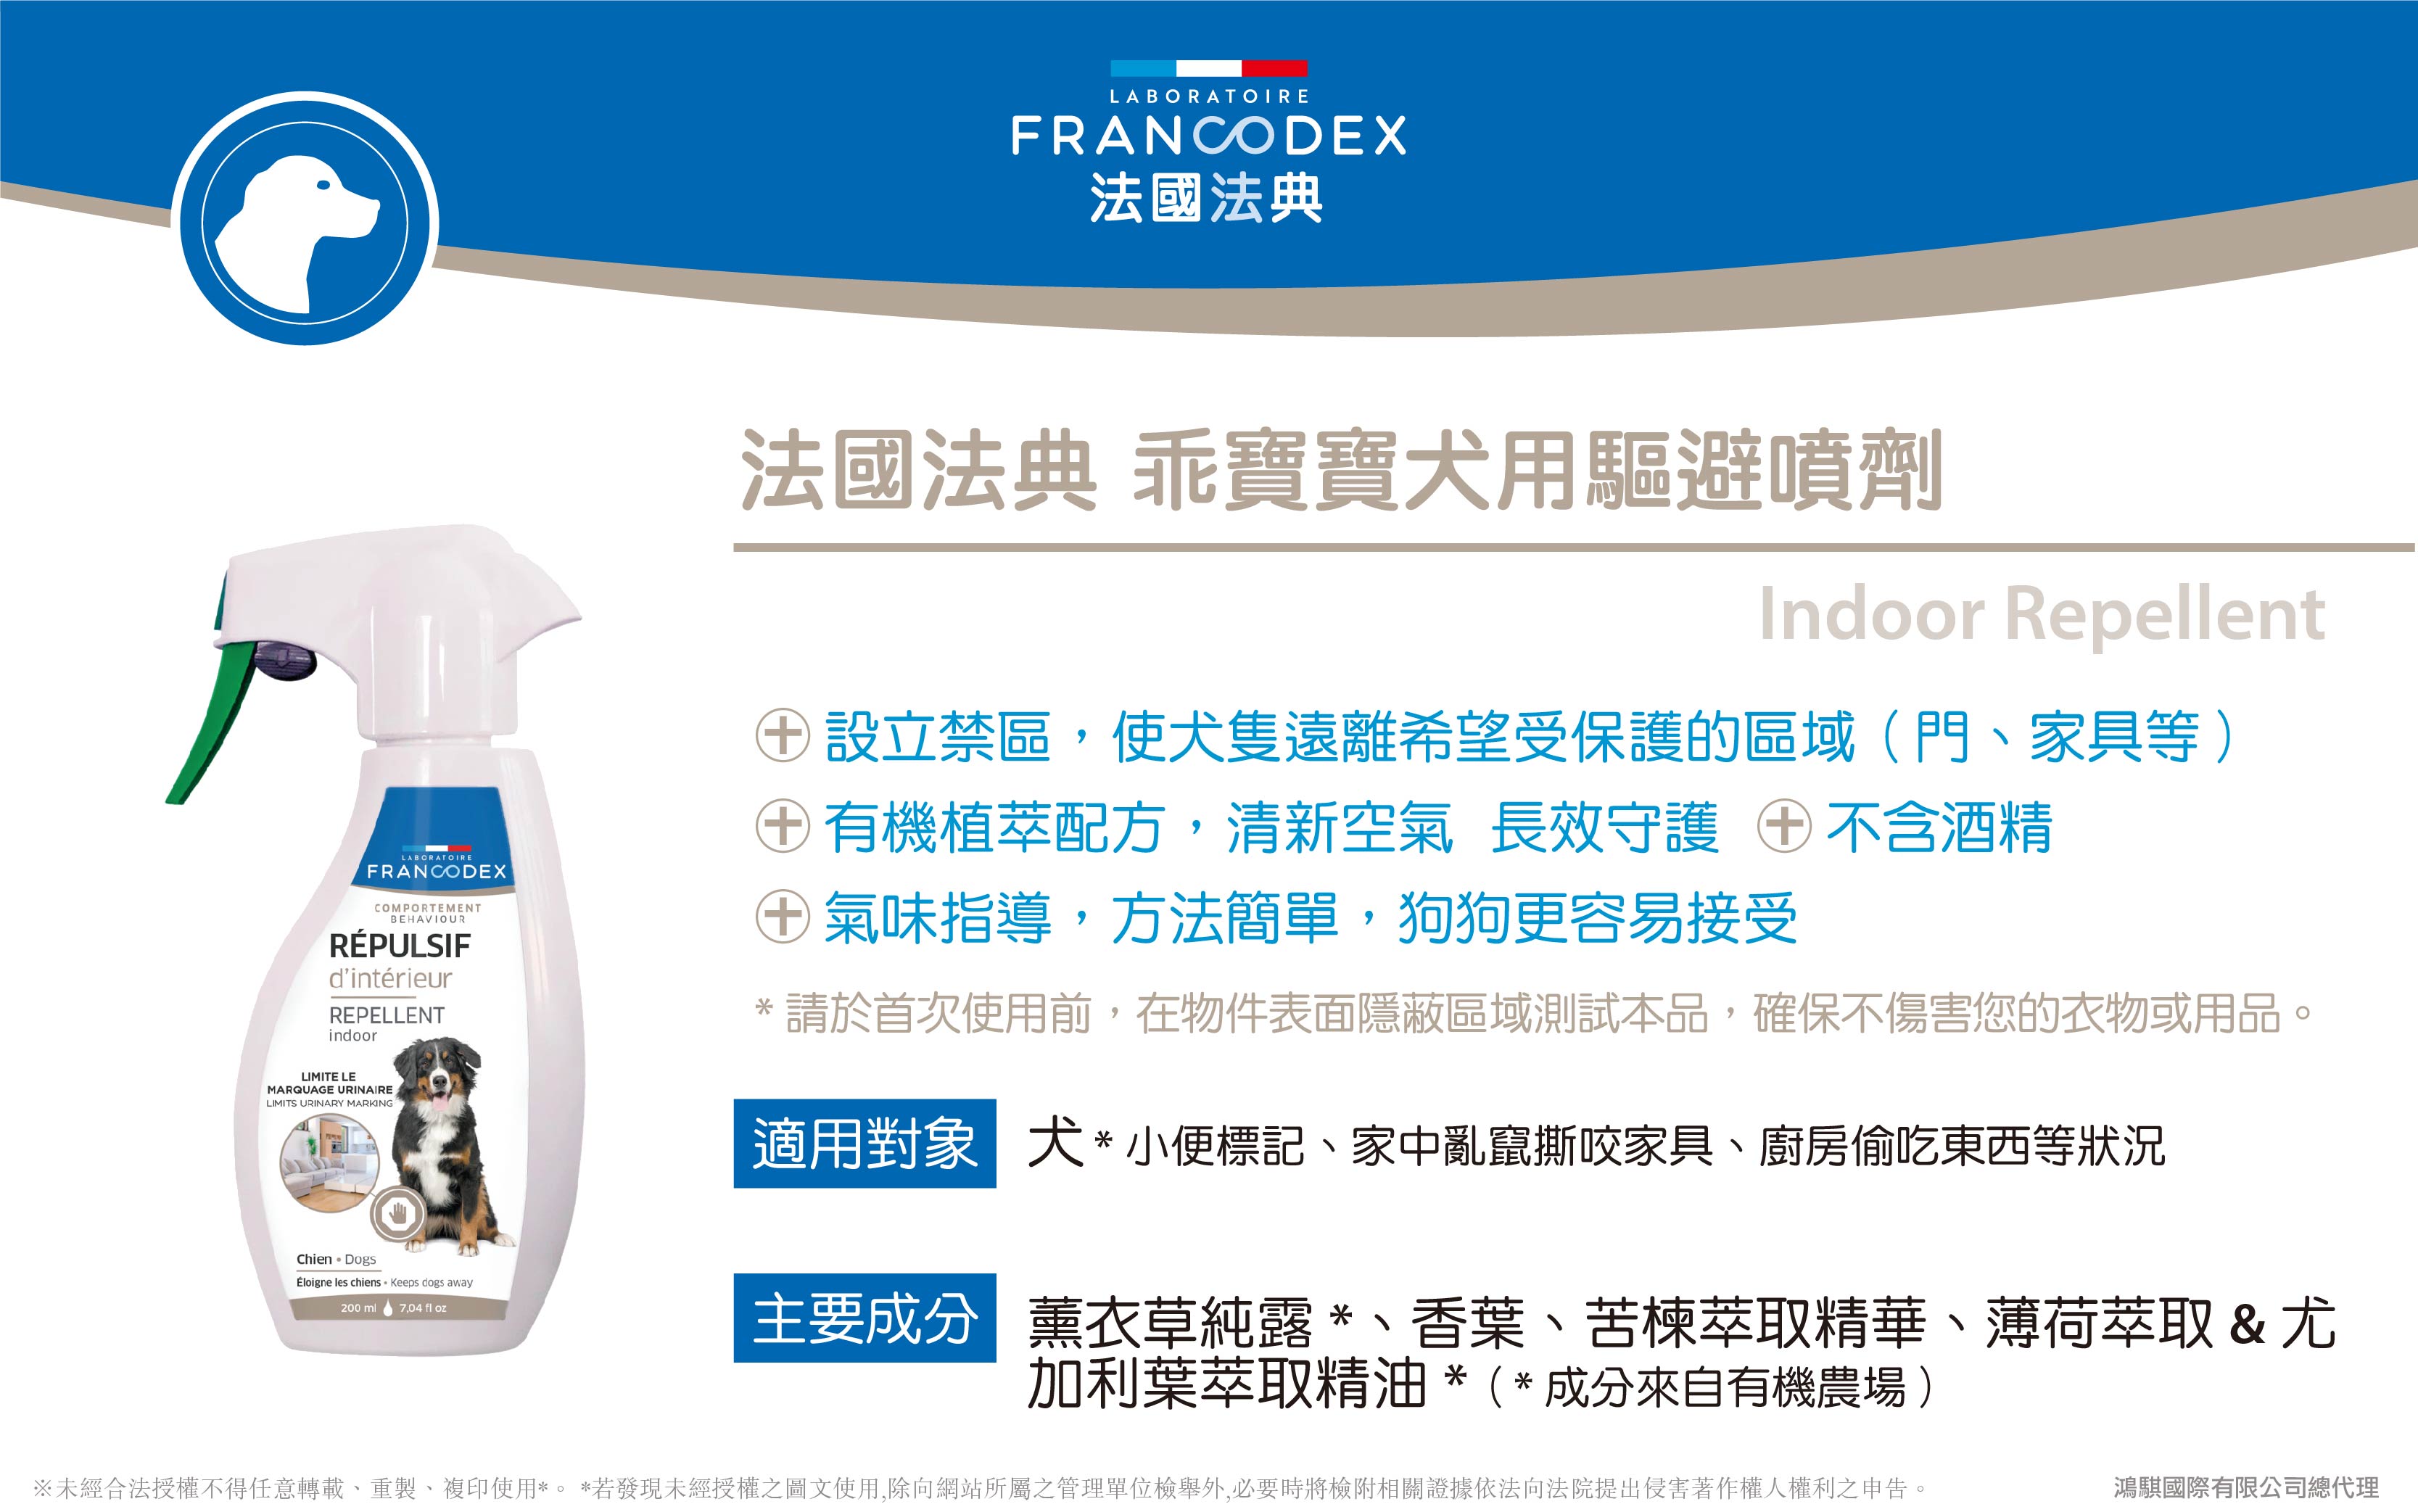 【Francodex】官網-產品介紹_29法國法典乖寶寶犬用驅避噴劑